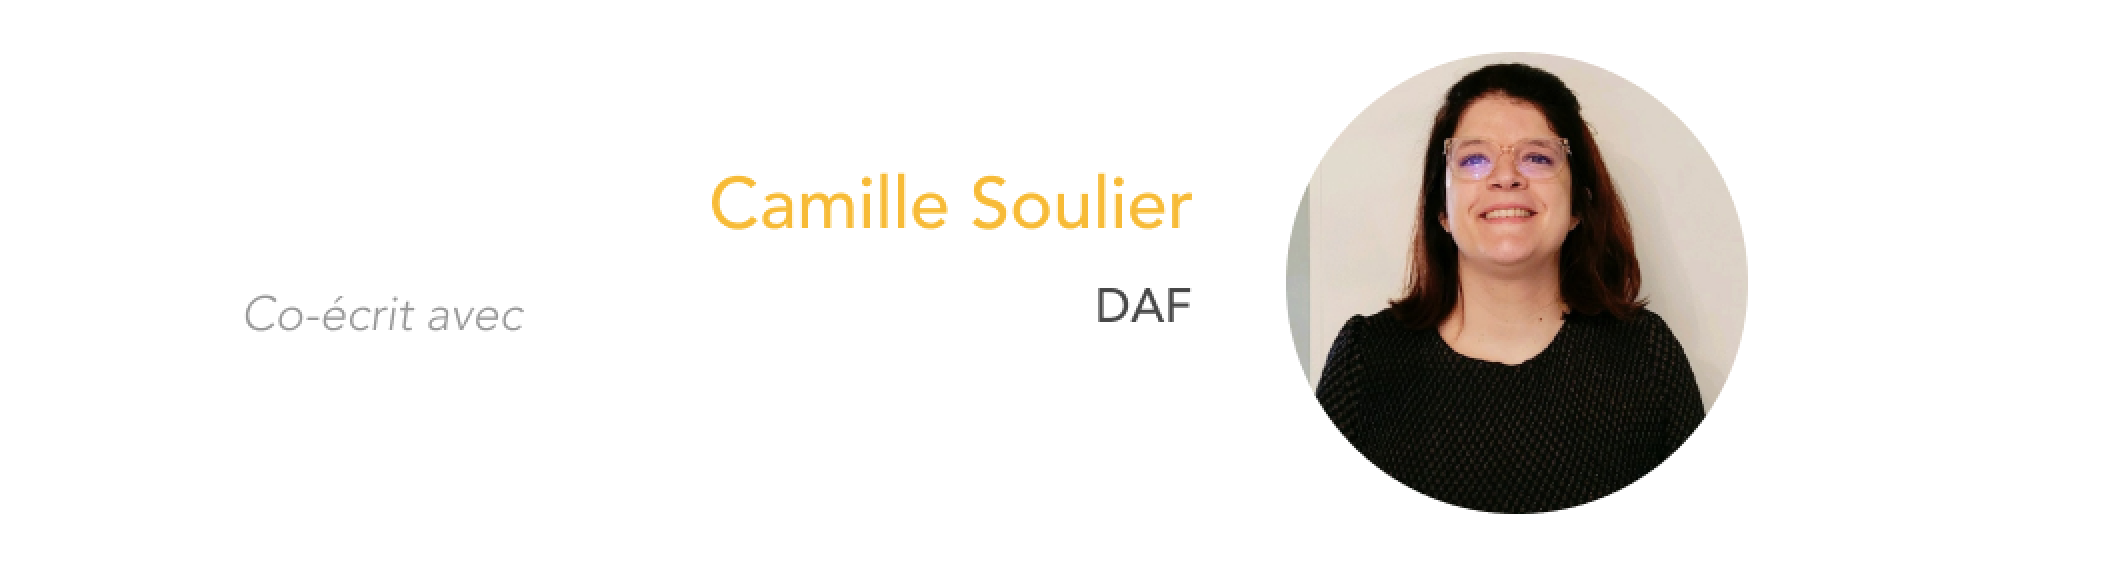 Camille Soulier Cash Academy épisode 4